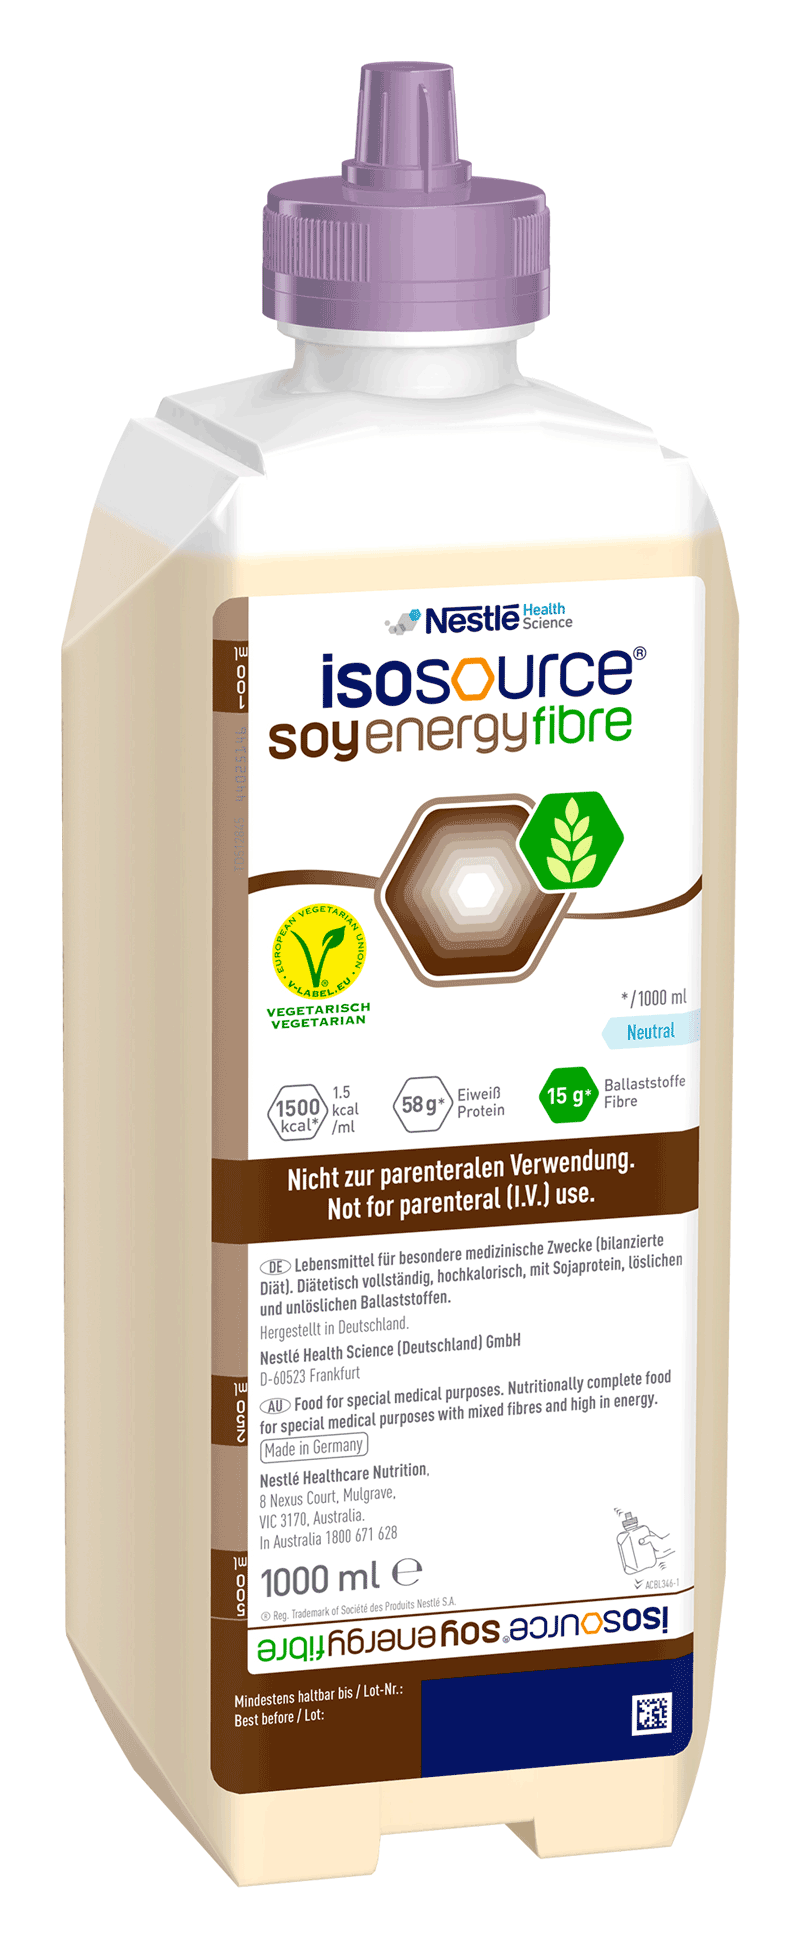 Isosource Soy Energy Fibre tube feed